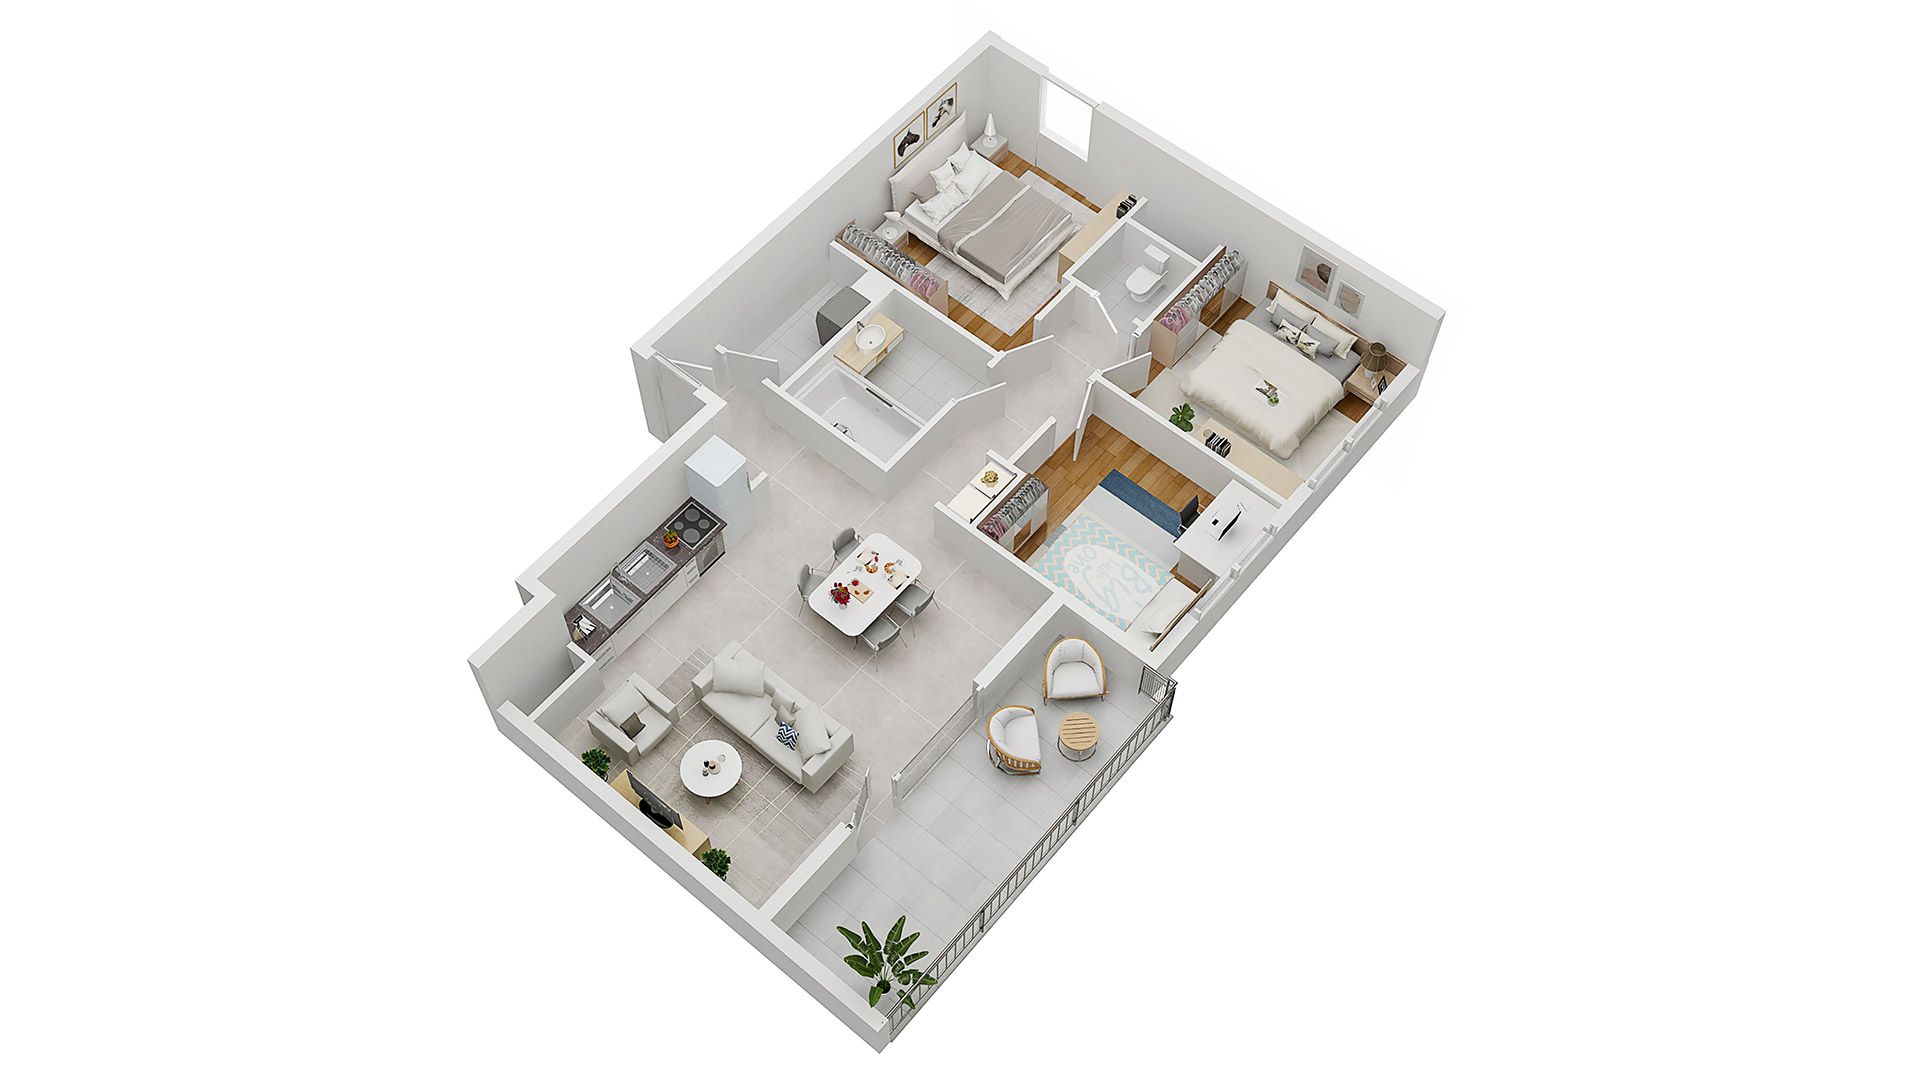 Concept Immobilier - Les Jardins d'Agathe - Appartements neufs à Florange - Axonométrie d'un appartement de type T4